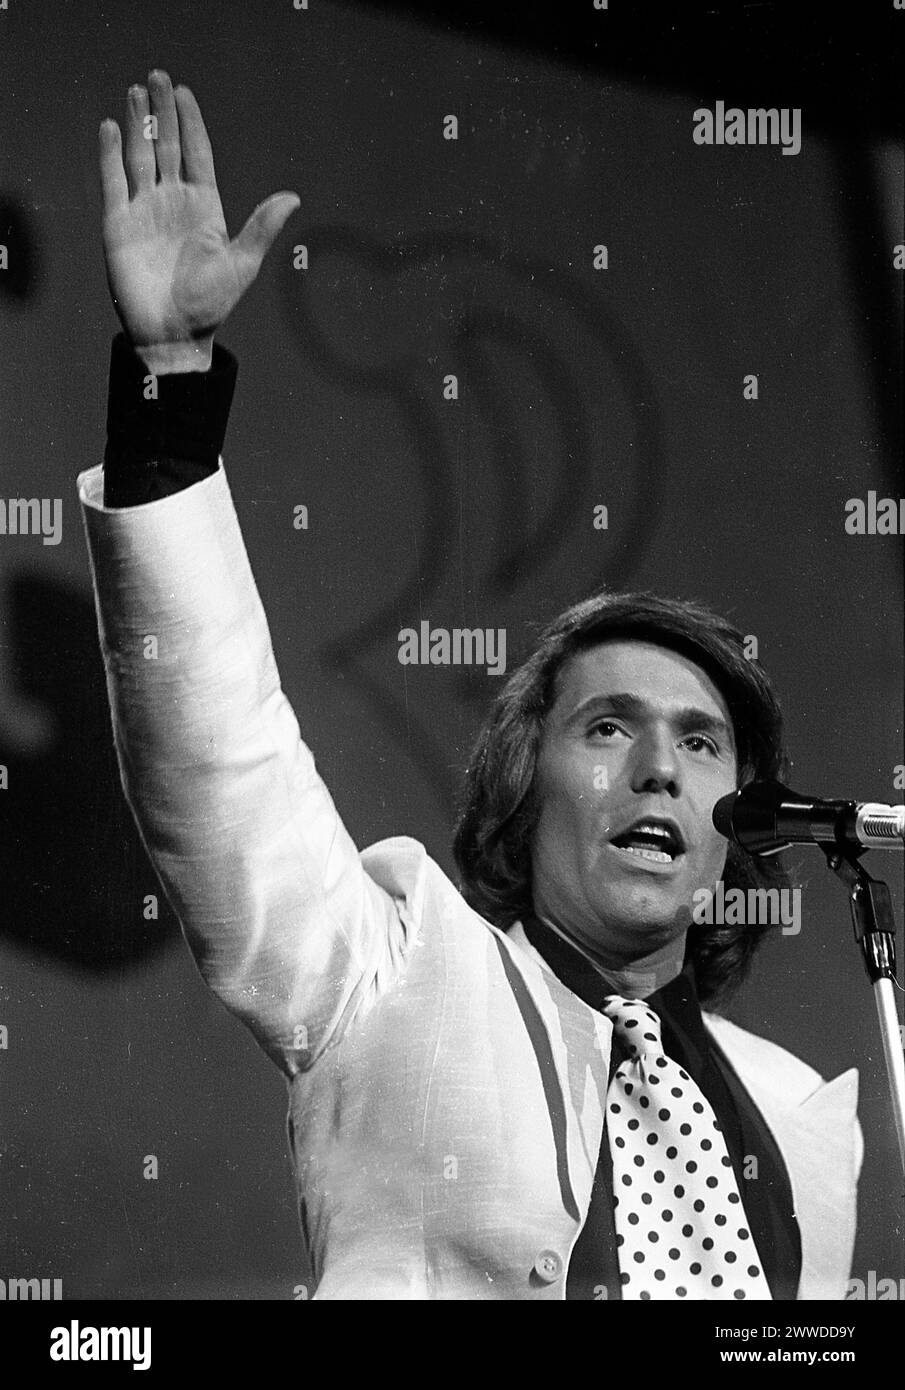 El popular cantante español Raphael (nacido en 1943 como Miguel Rafael Martos Sánchez), durante una actuación en Buenos Aires, Argentina, alrededor de los años 1970 Foto de stock